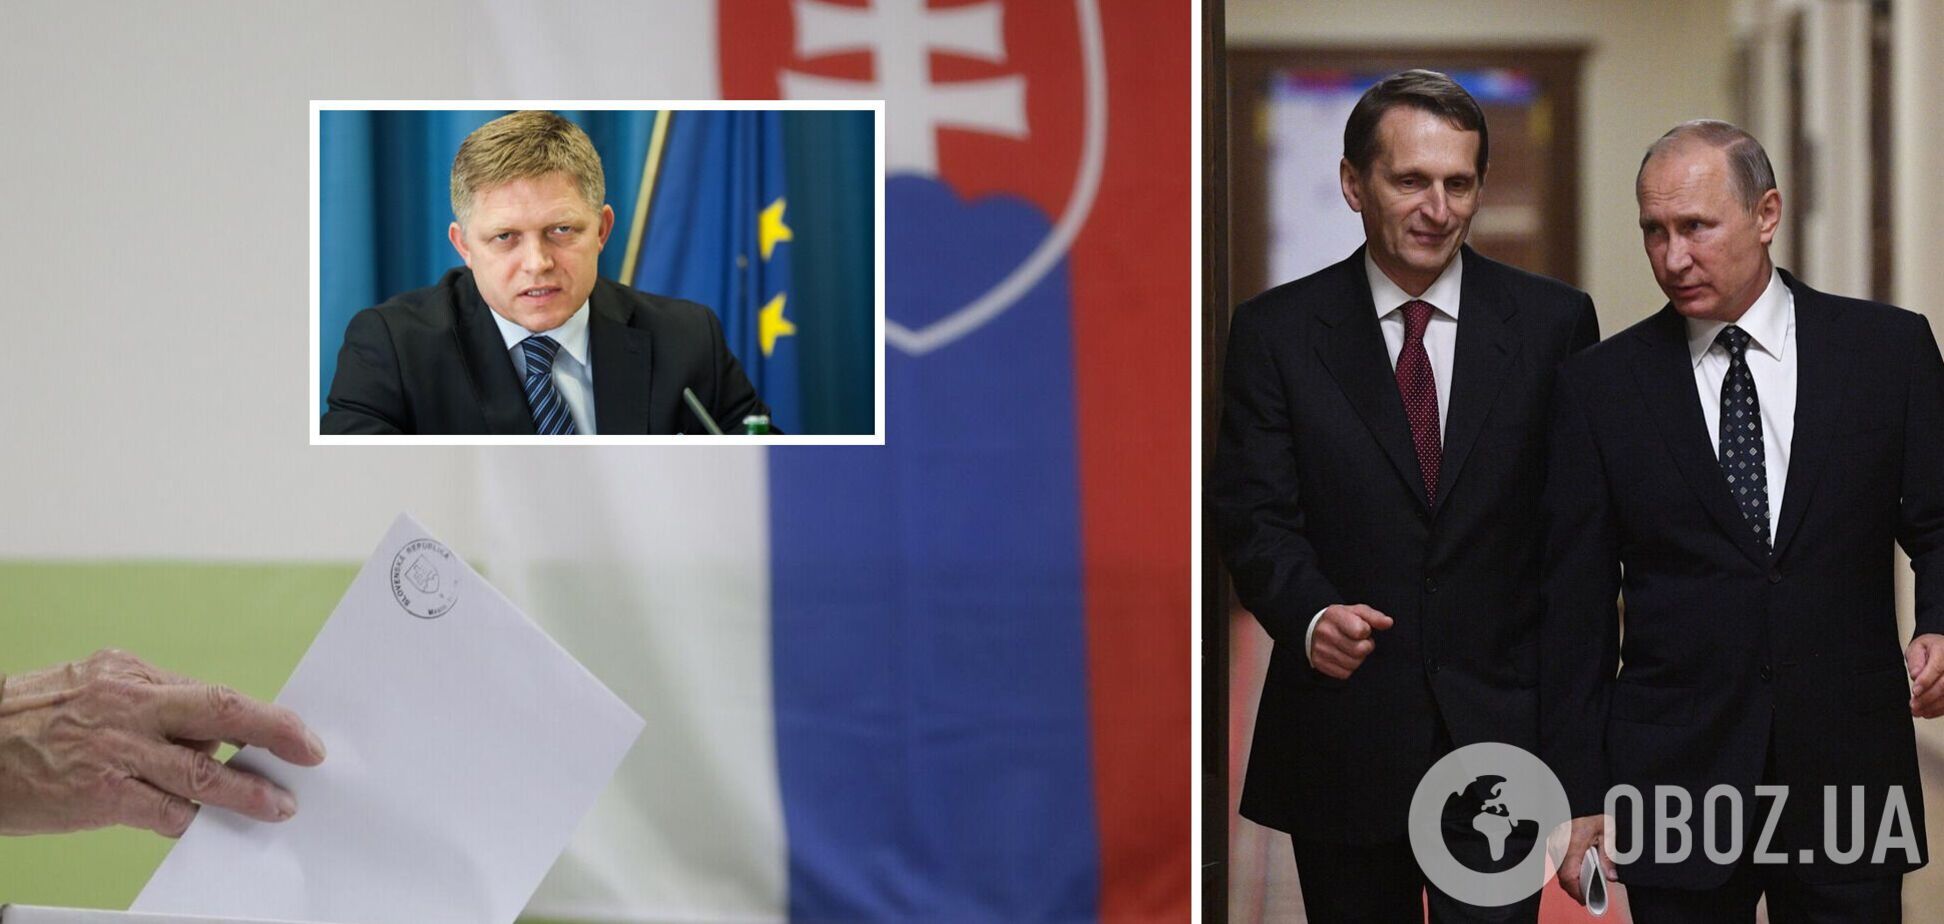 Словакия обвинила Россию во вмешательстве в парламентские выборы и вызвала посла: что известно